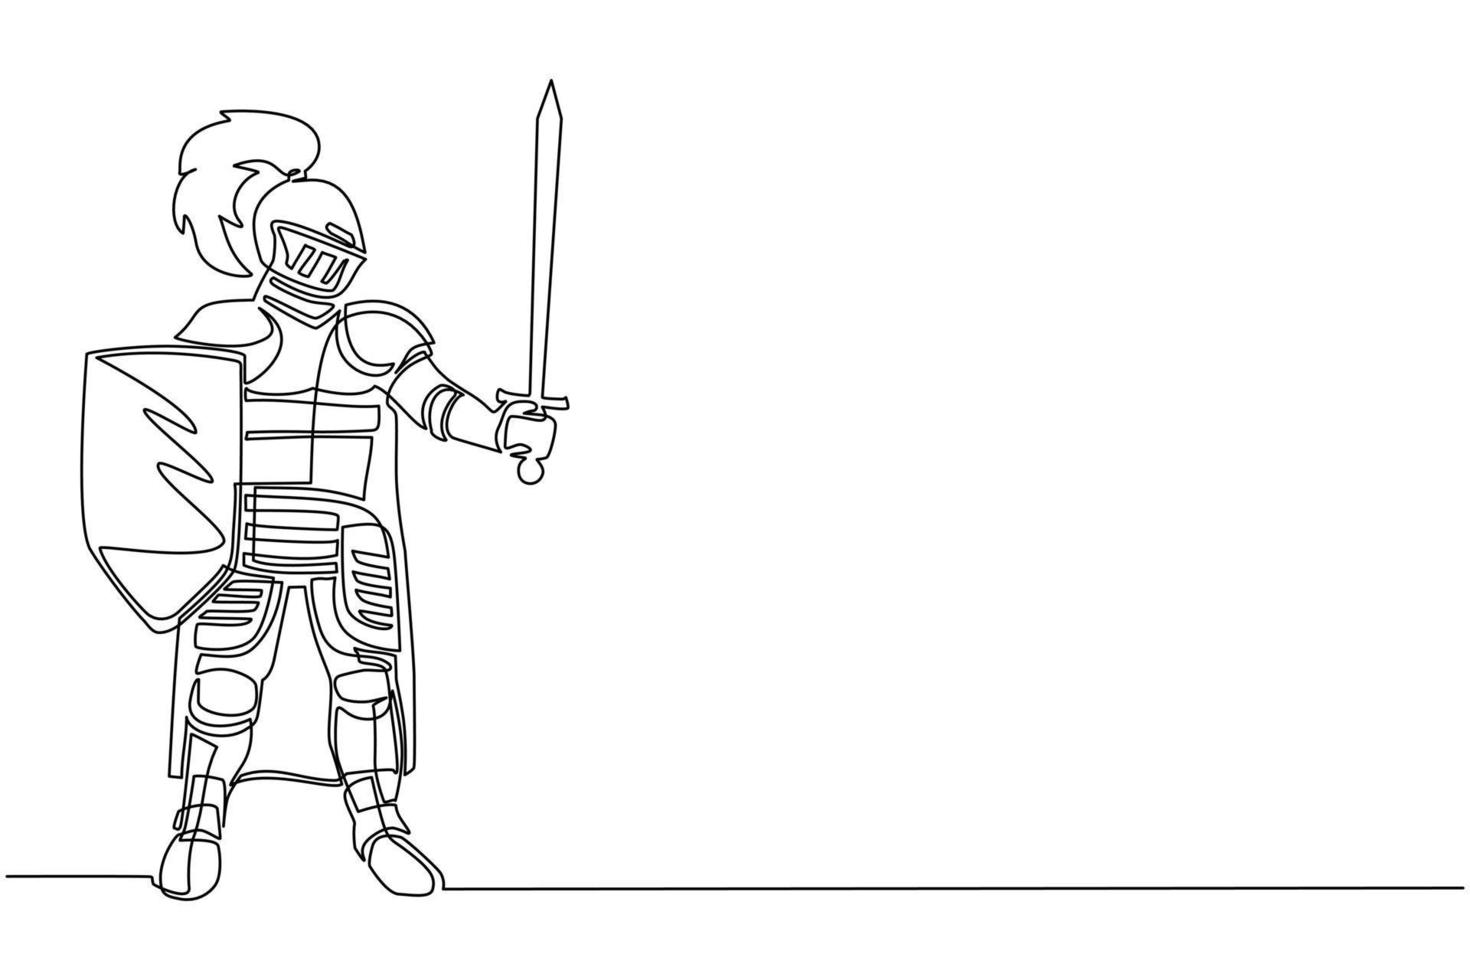 disegno a linea continua singola cavaliere medievale in armatura, mantello ed elmo con piuma. guerriero del medioevo in piedi, con scudo e spada alzata. figura cavalleresca. vettore di disegno di una linea